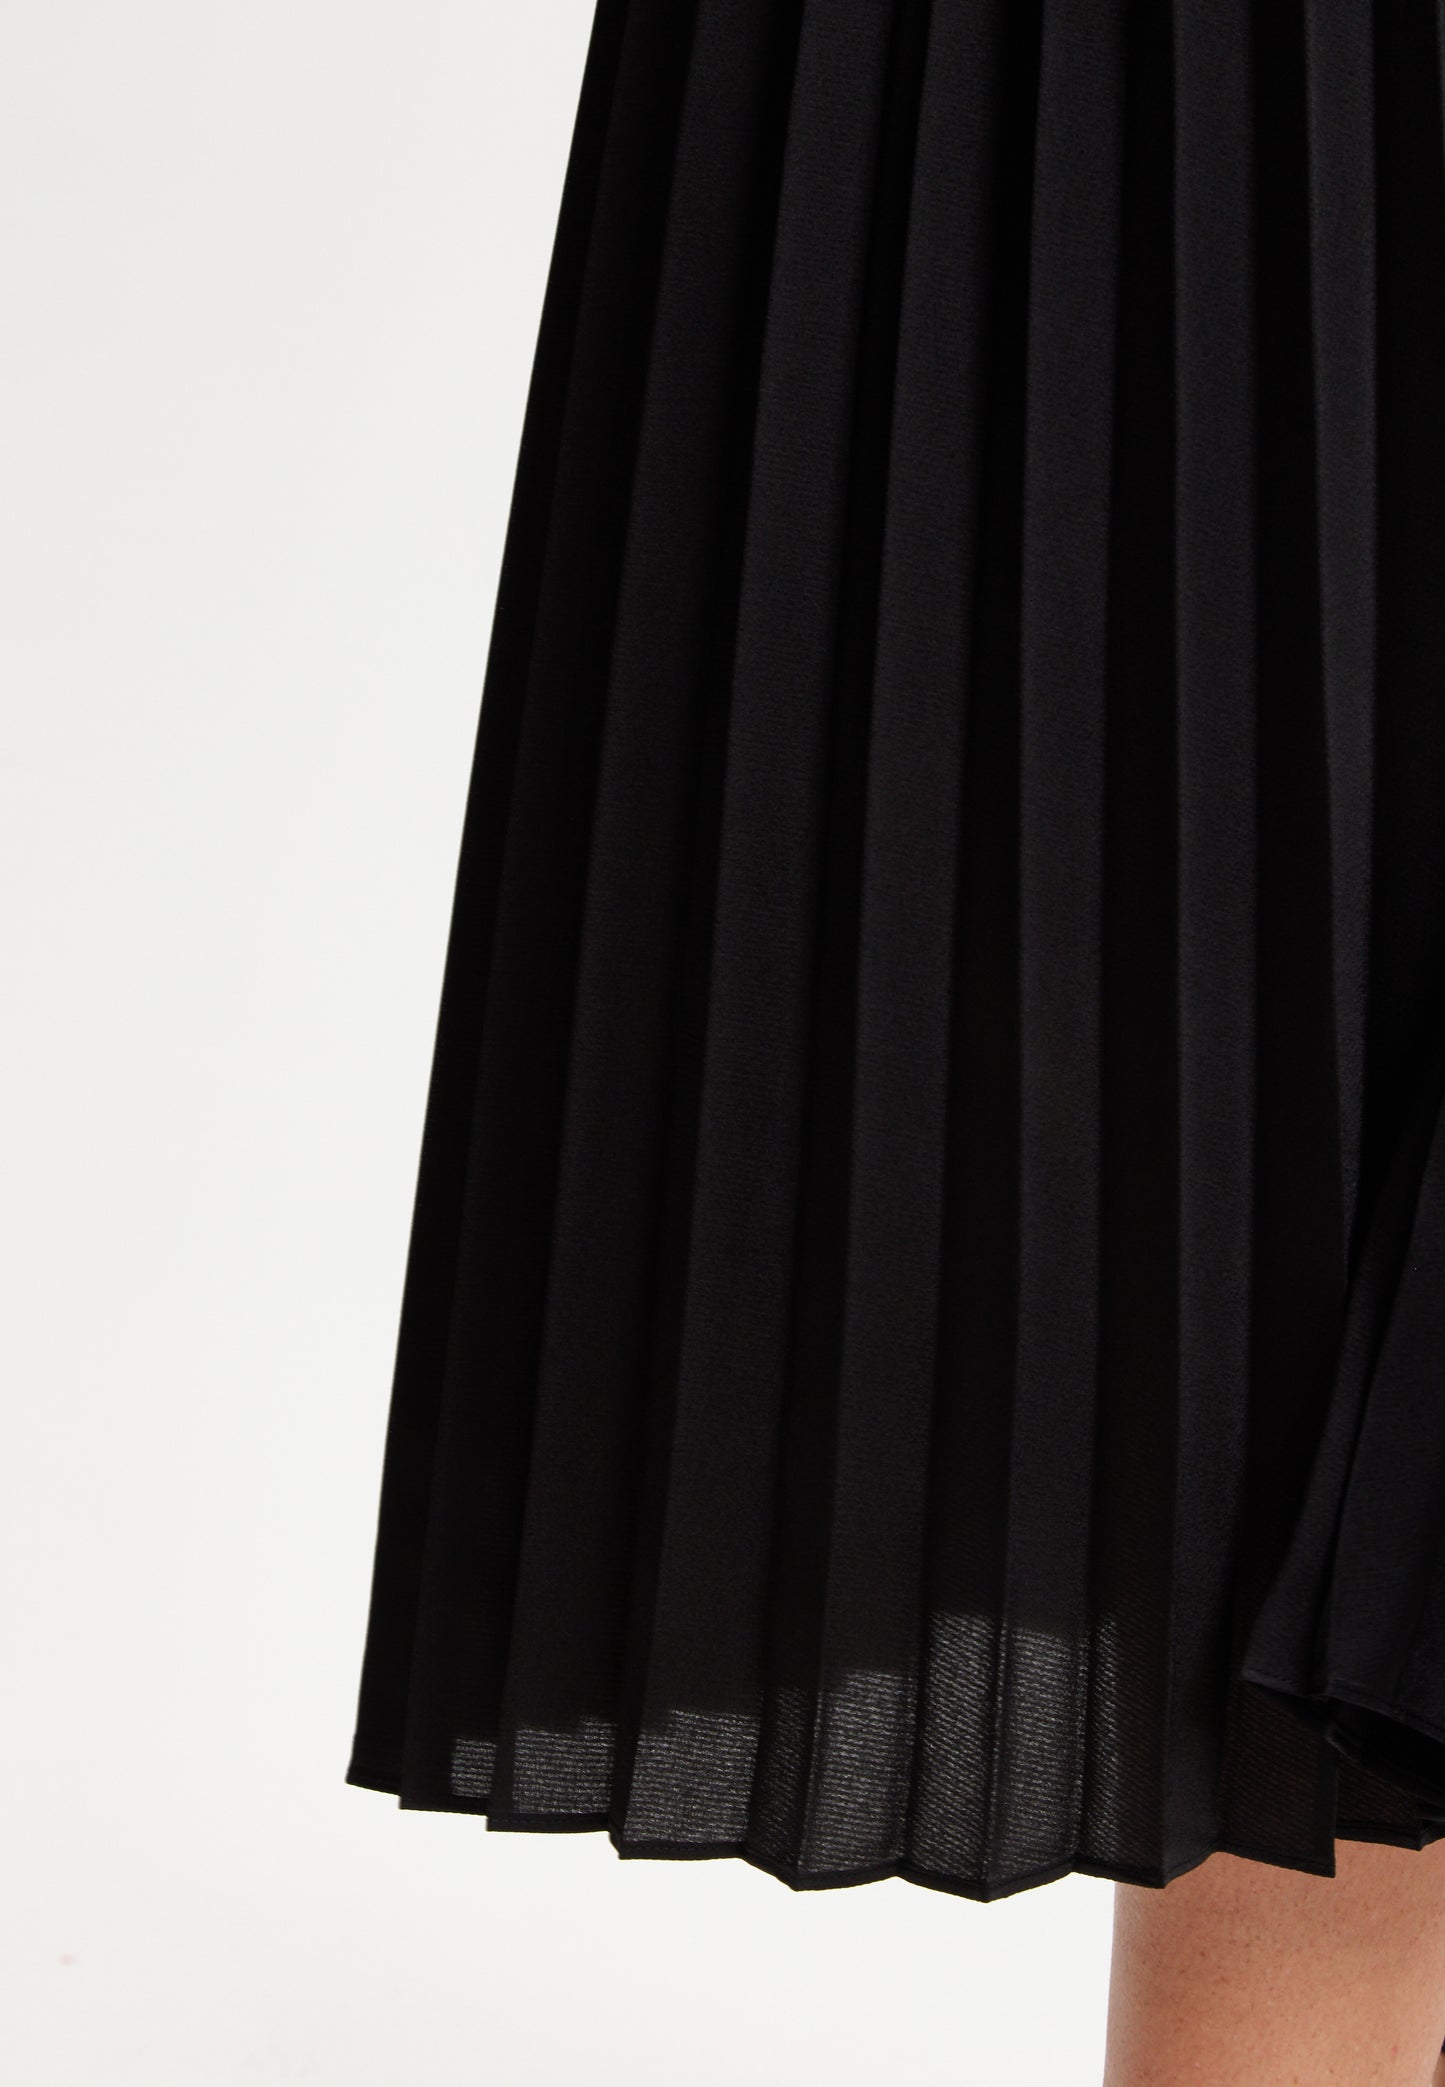 
                  
                    Liquorish Black Midi Dress With Pleat Details
                  
                